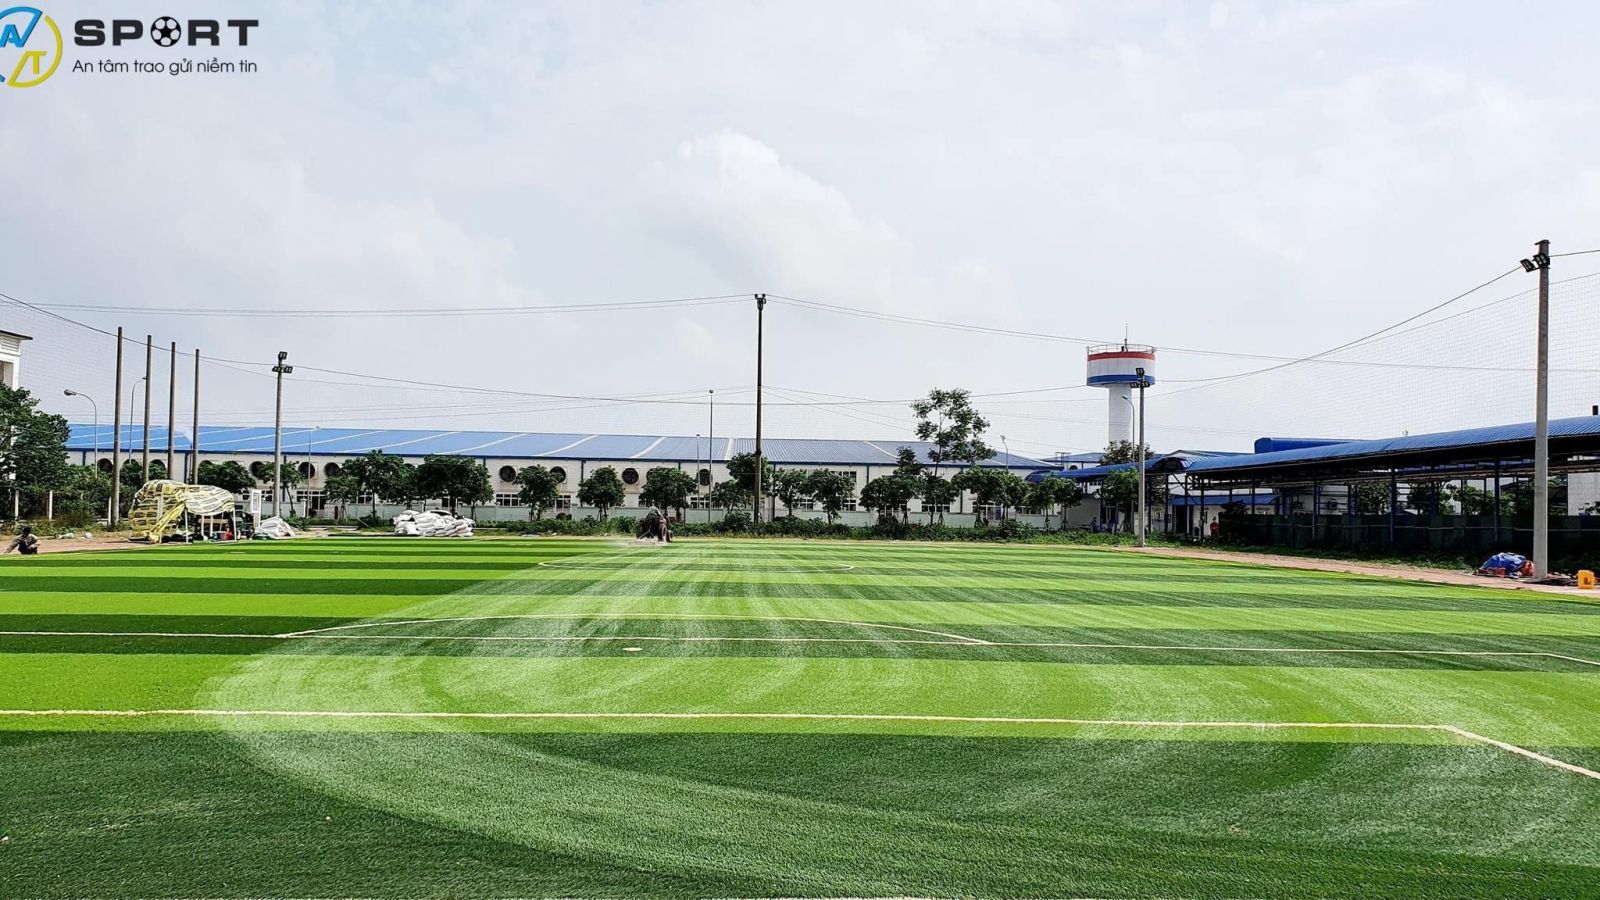 Thi công cỏ nhân tạo sân bóng tại Biên Hòa, Đồng Nai